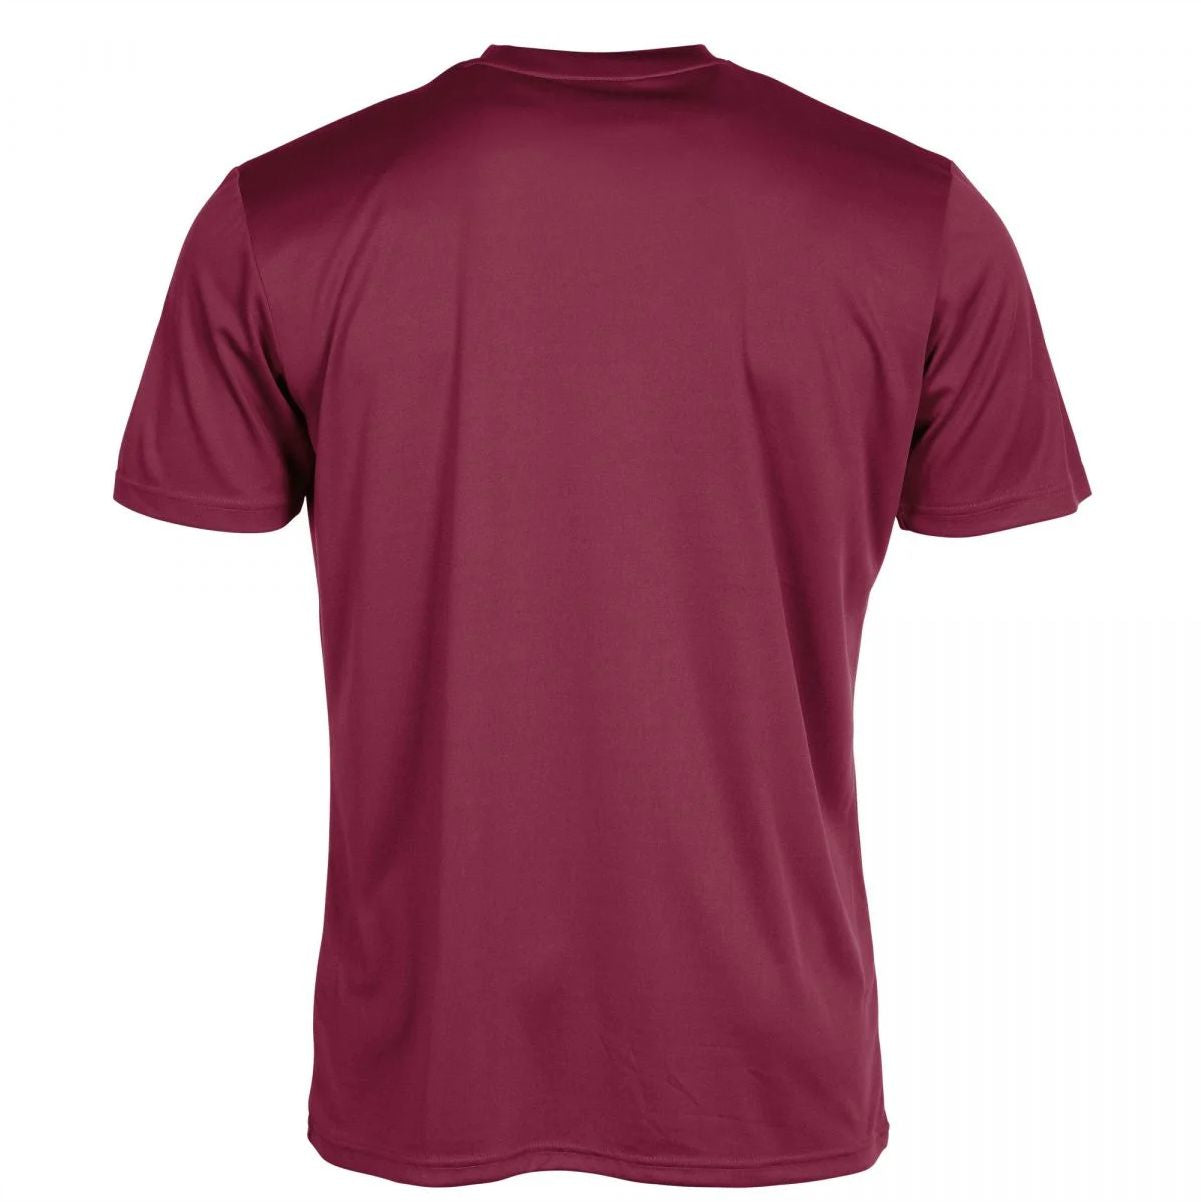 Stanno - Field Shirt - Burgundy